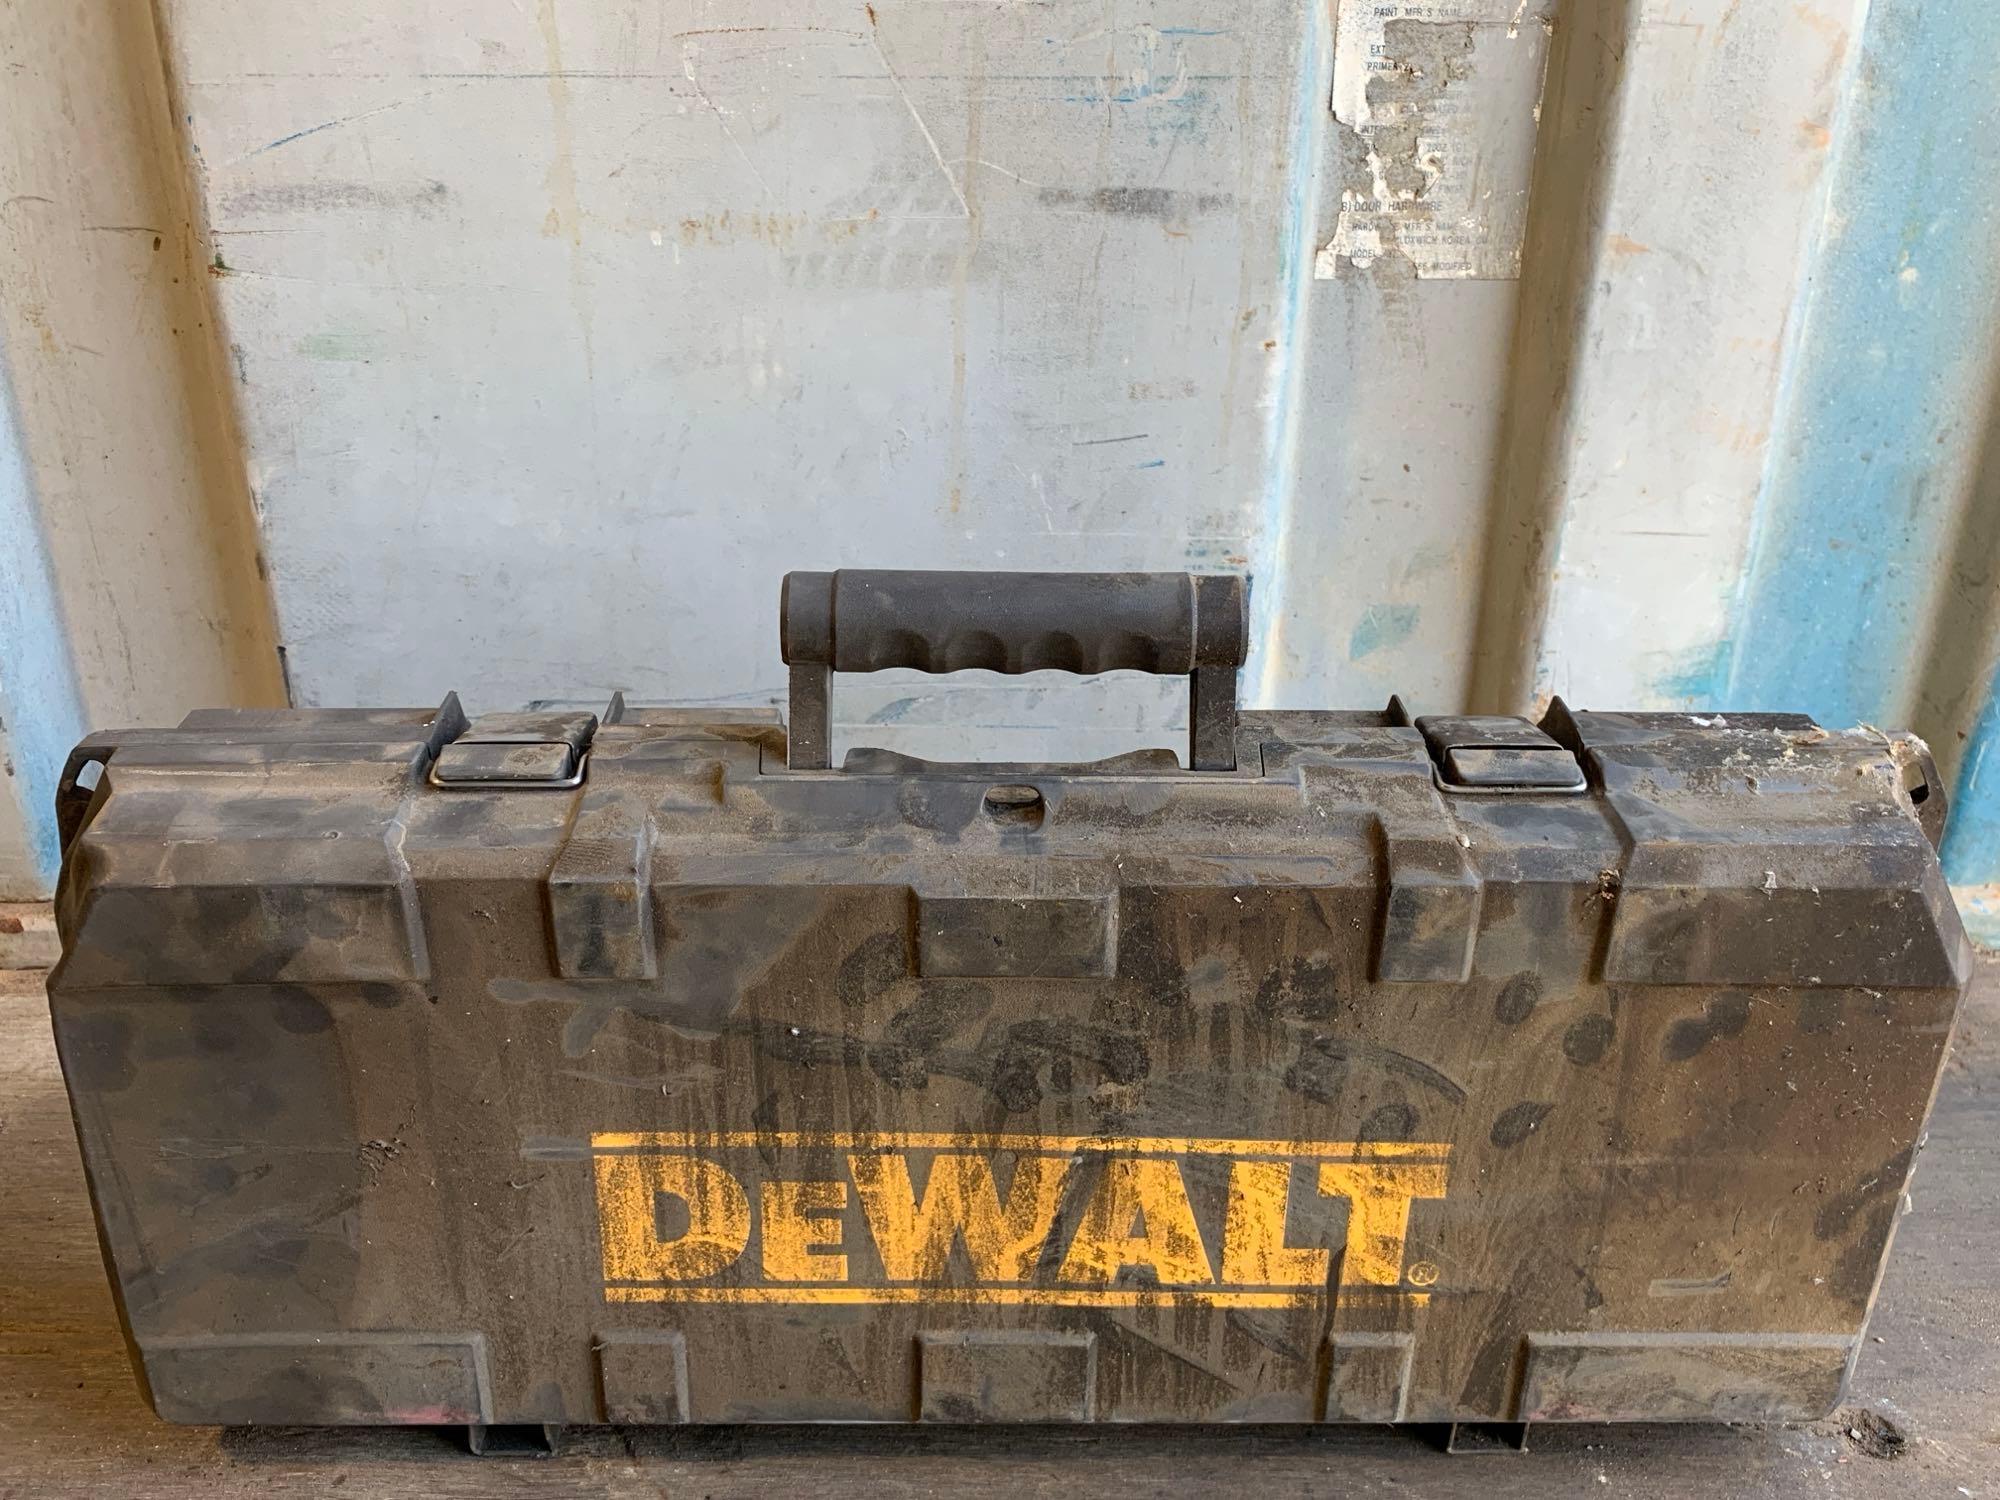 DeWalt Cordless 18-Volt Reciprocating Saw